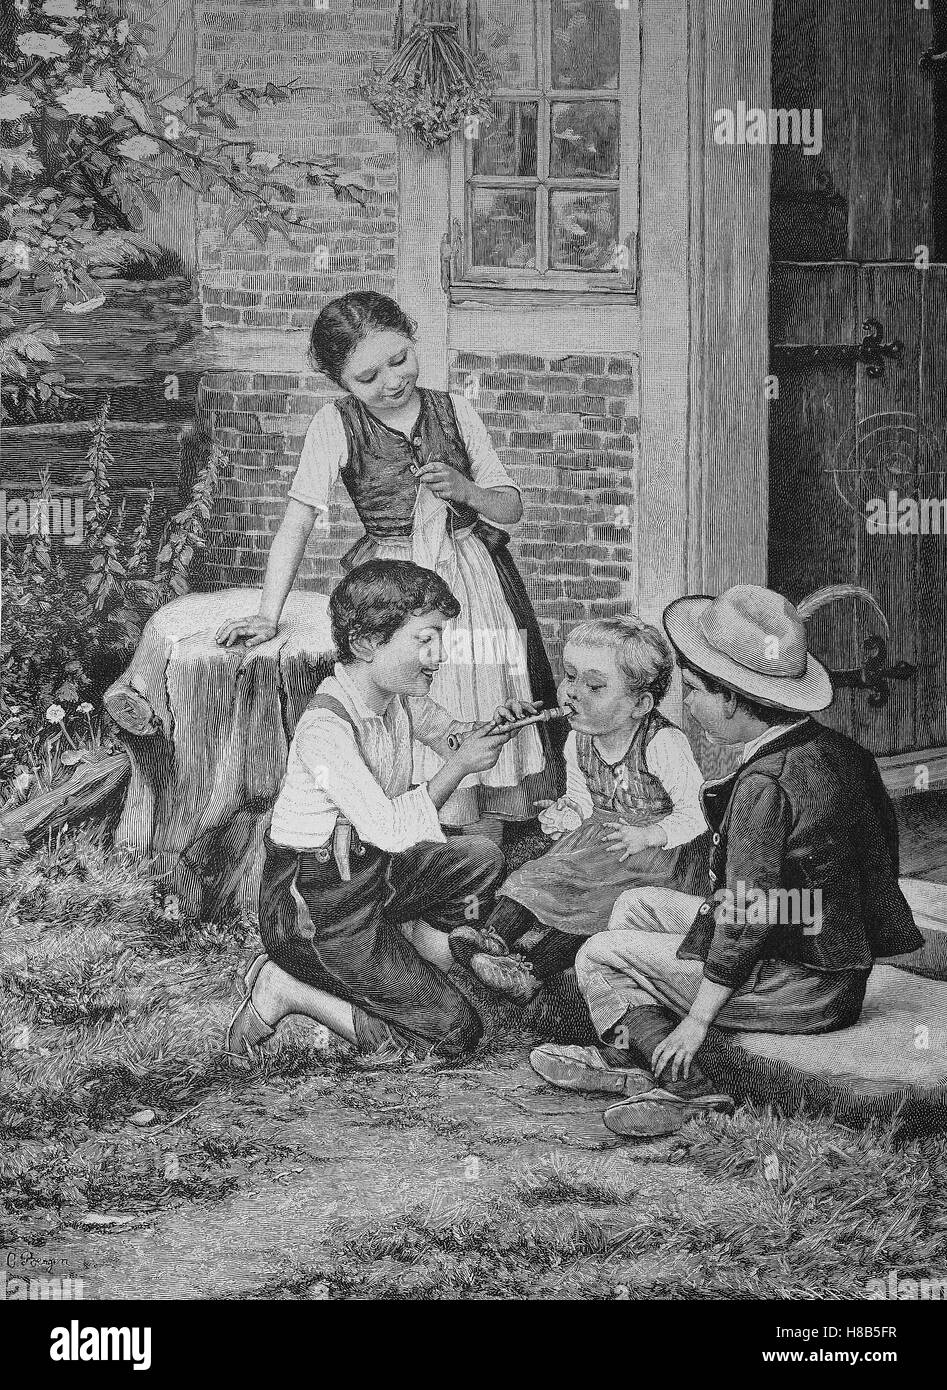 La pratique des enfants jouant de la flûte, gravure sur bois de 1892 Banque D'Images